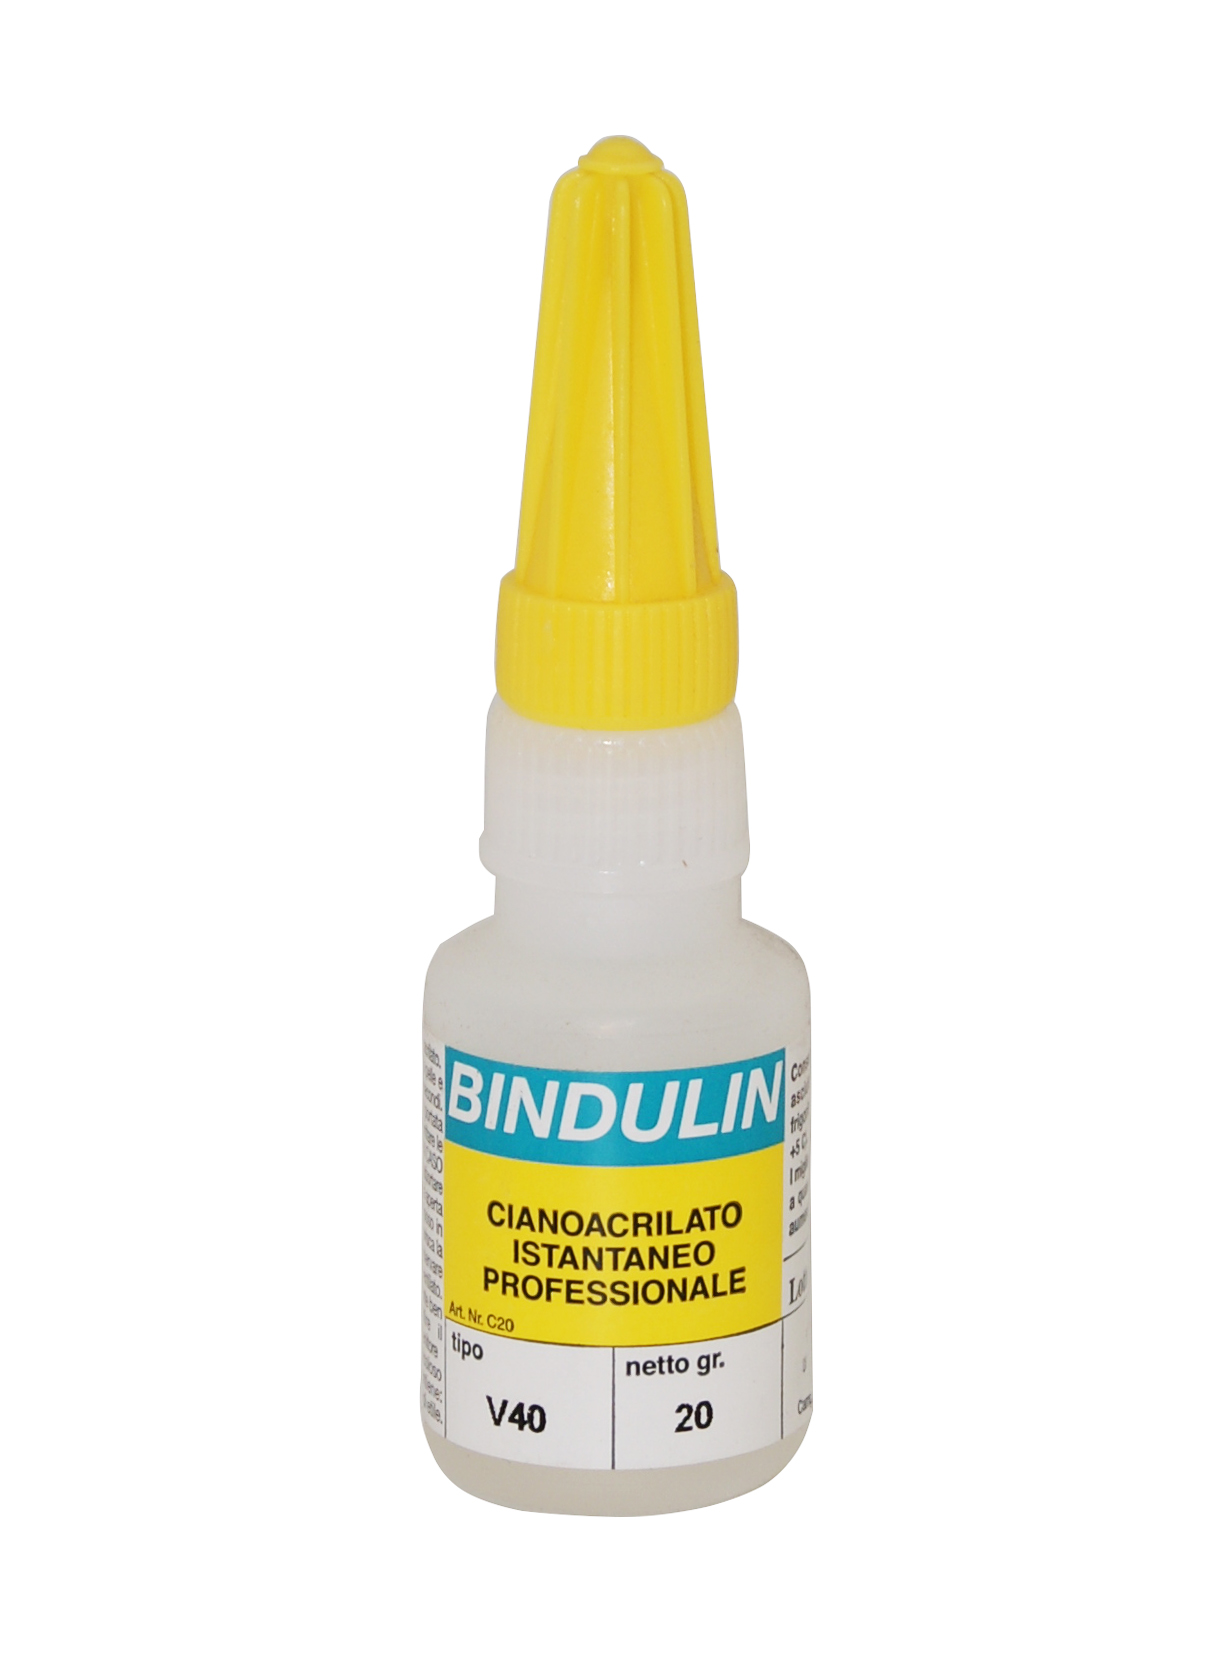 Bindulin - cianoacrilato v40 trasparente 20 g